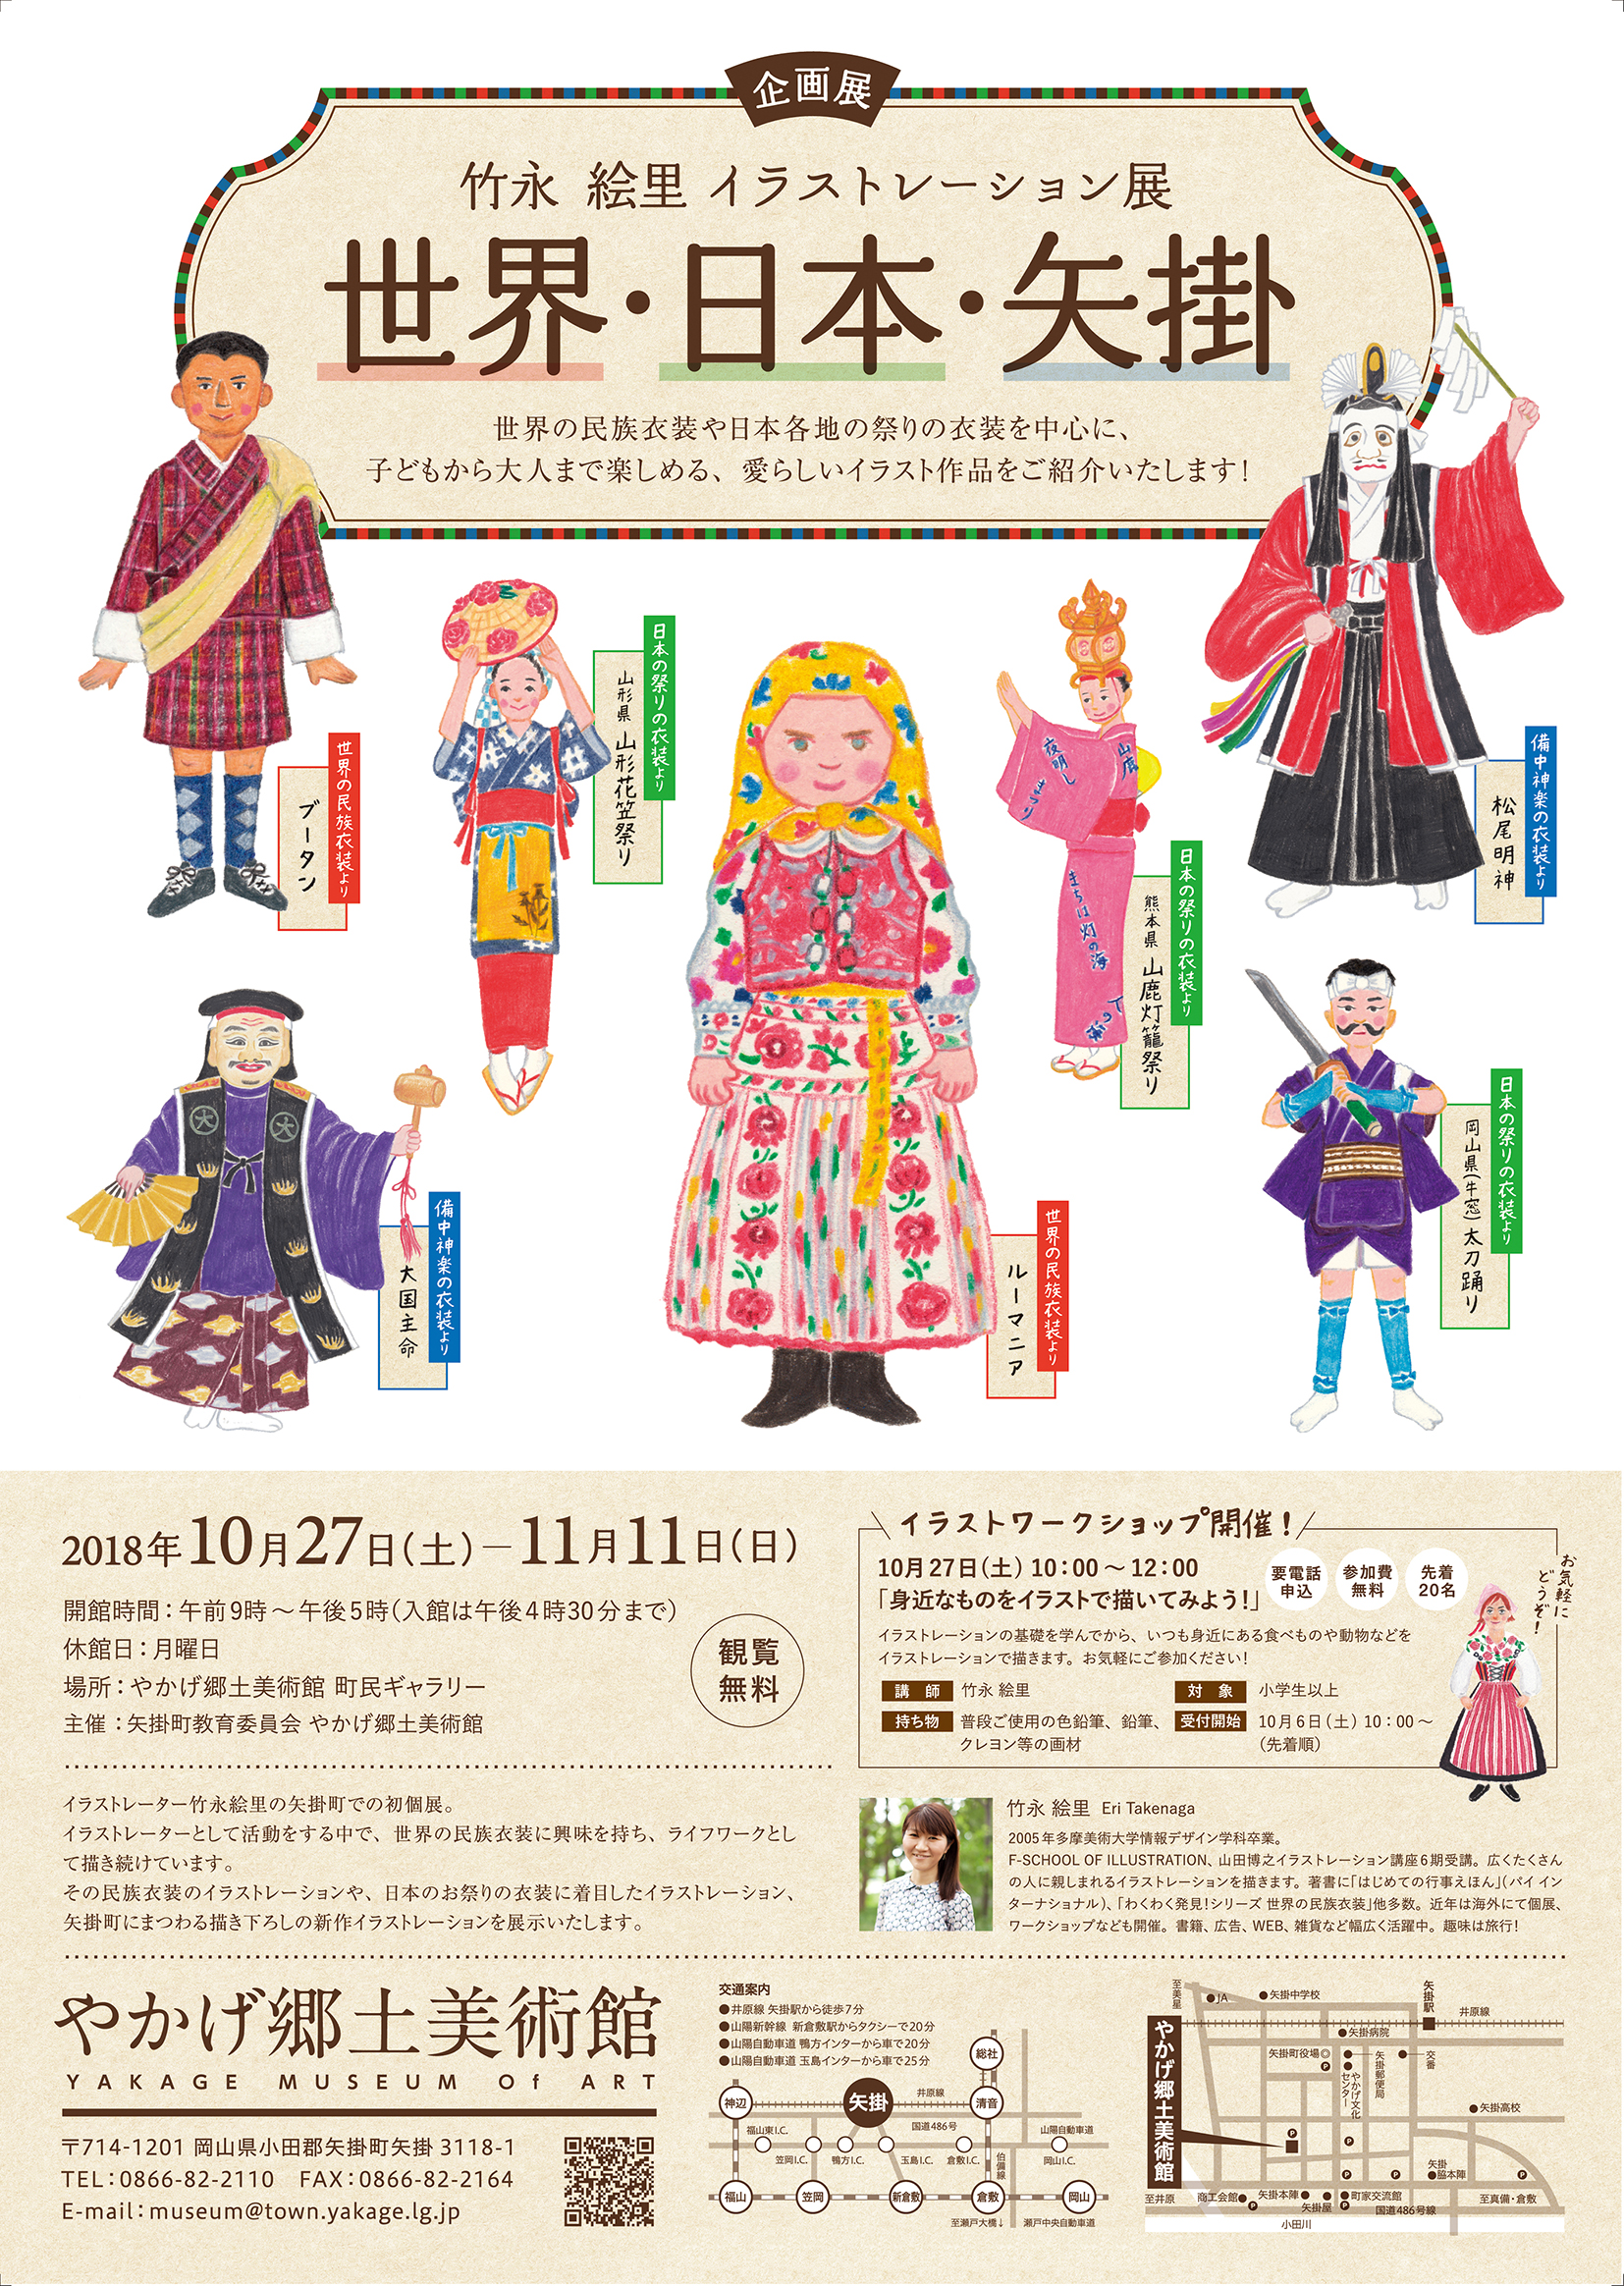 10 27 11 11 岡山県 やかげ郷土美術館にて展示を開催します Illustrator イラストレーター 竹永絵里の Blog